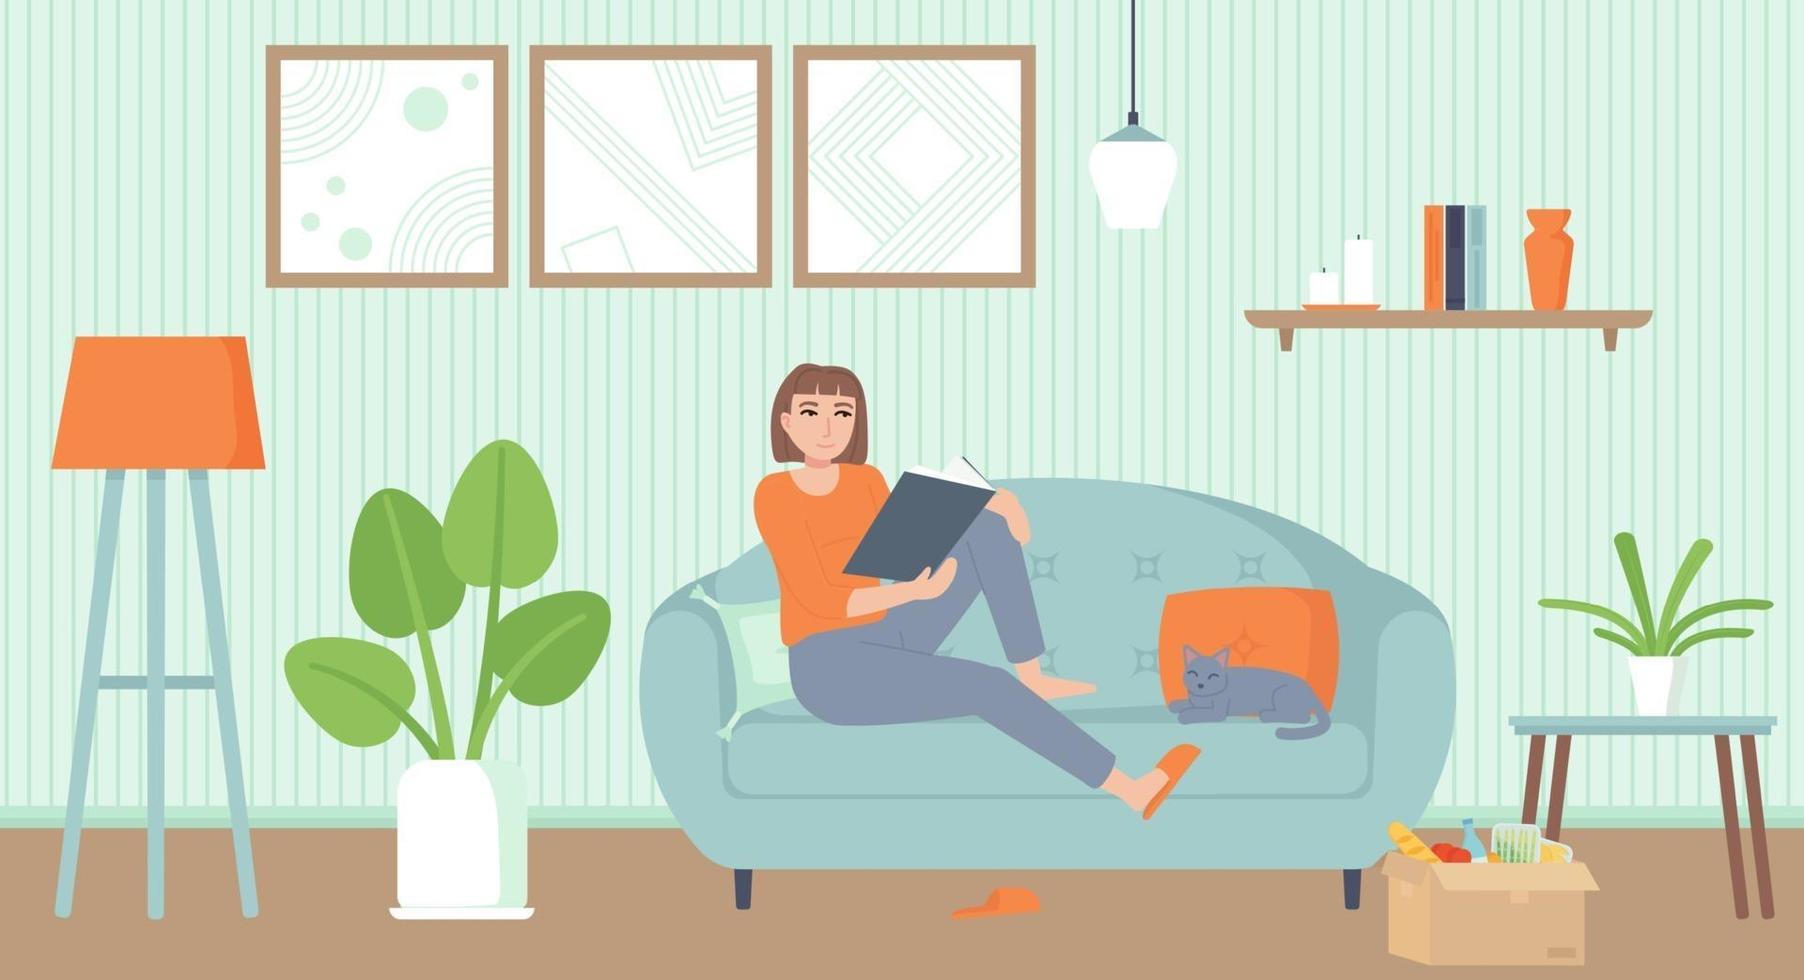 hemunderhållning isoleringsperiod koppla av koncept mysig interiör vardagsrum med en kattflicka på soffan läser en bok lager vektorillustration i tecknad platt stil vektor